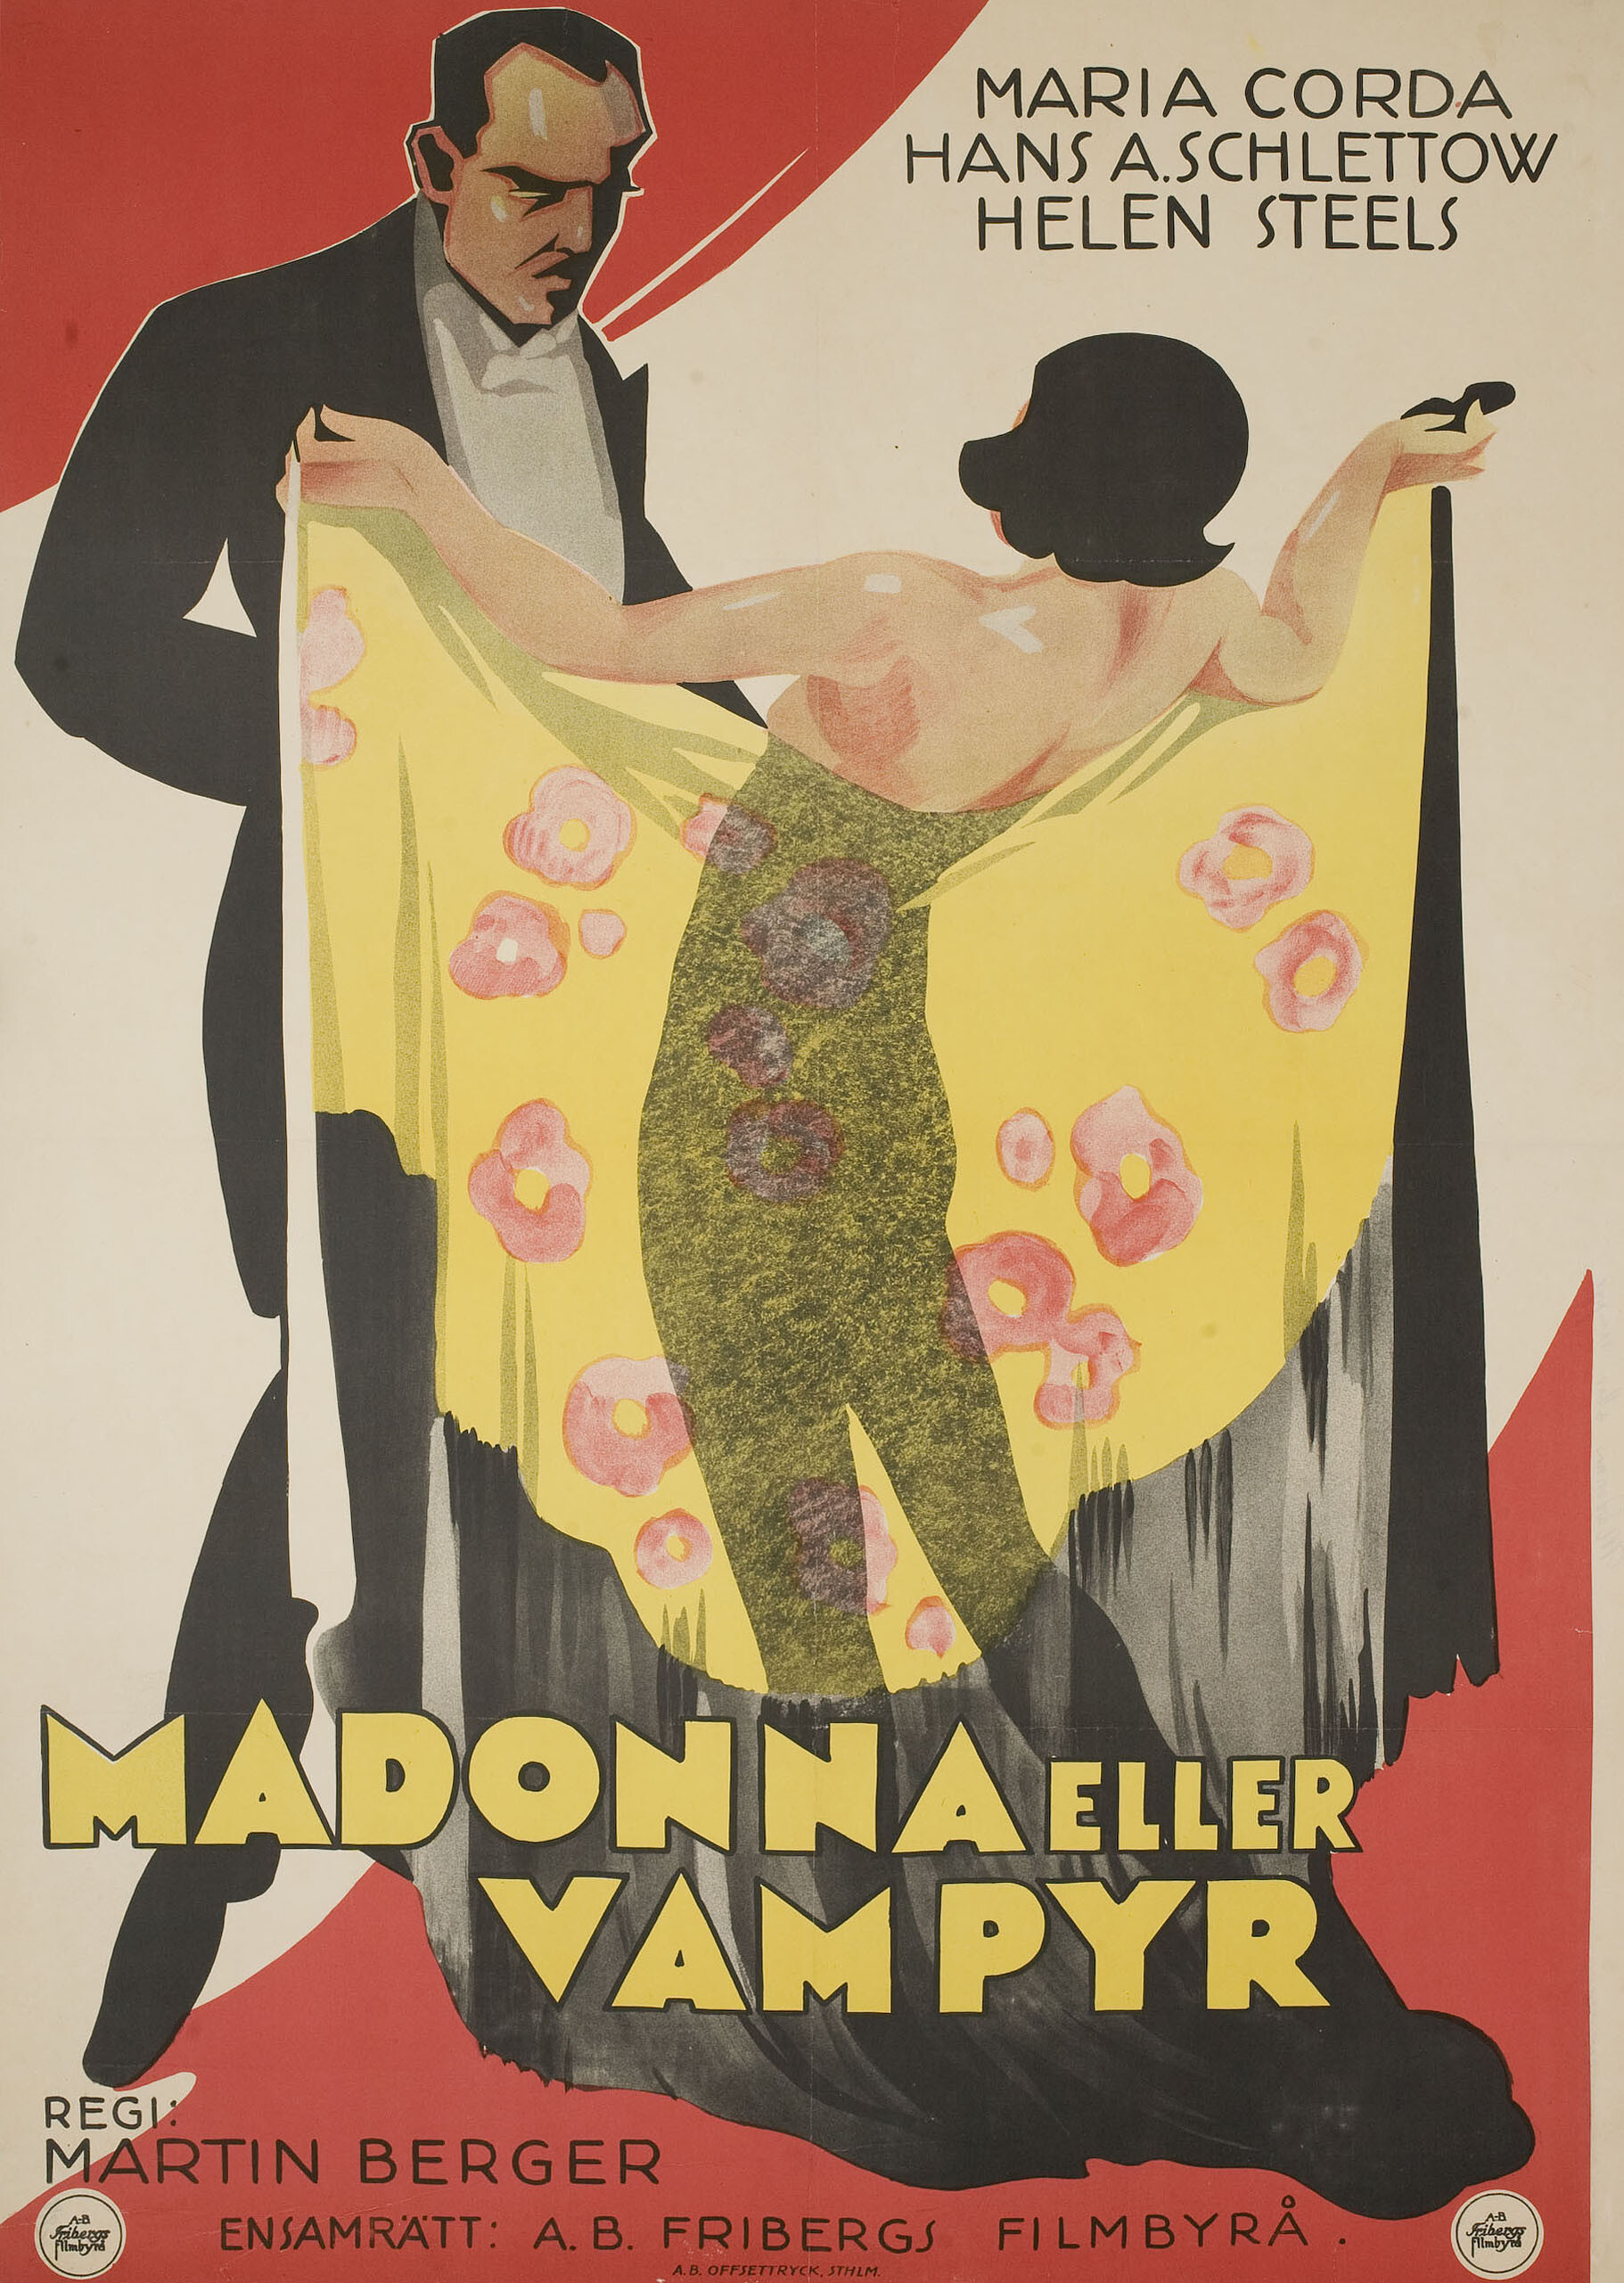 Хайлиге одер Дирн (Heilige oder Dirne, 1929), режиссёр Мартин Бергер, постер к фильму в стиле ар-деко (Швеция, 1929 год)